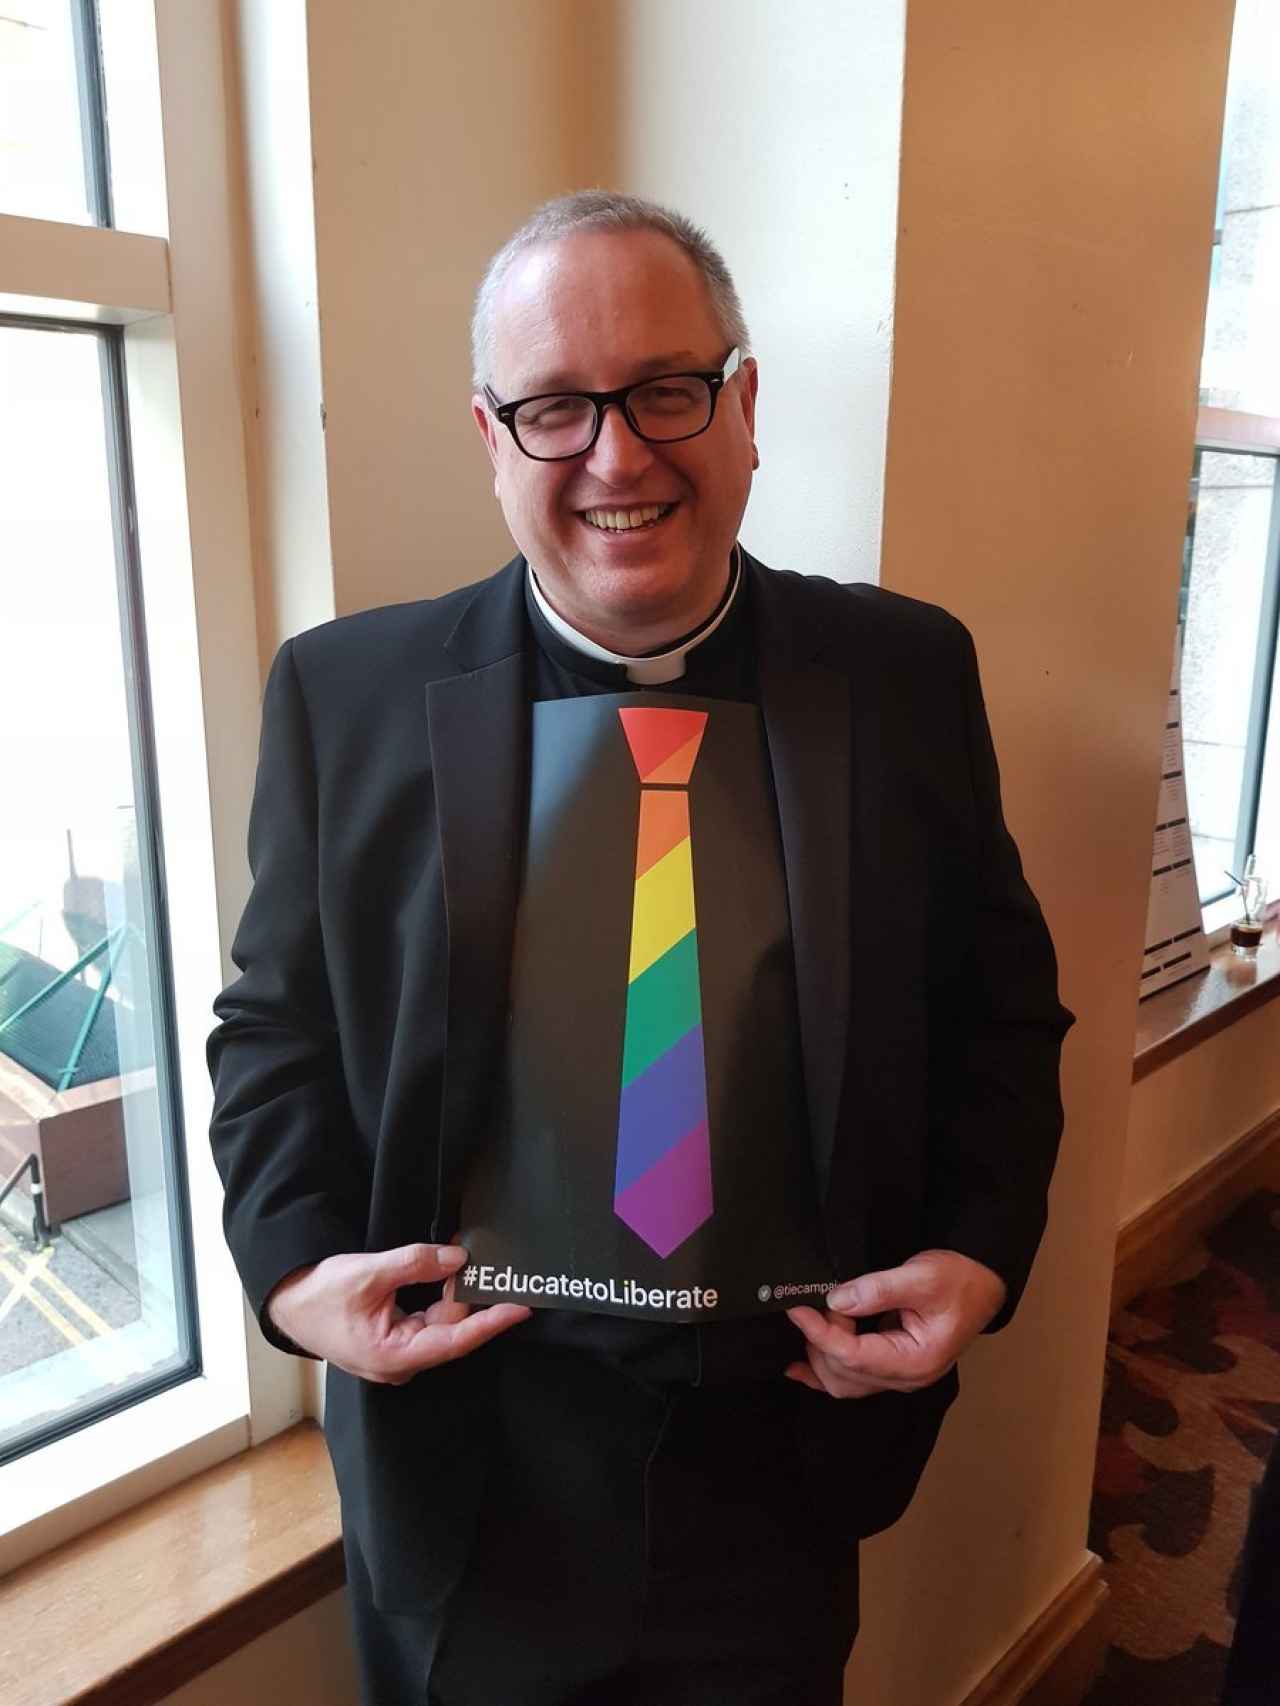 El reverendo es conocido por su apoyo al colectivo homosexual.